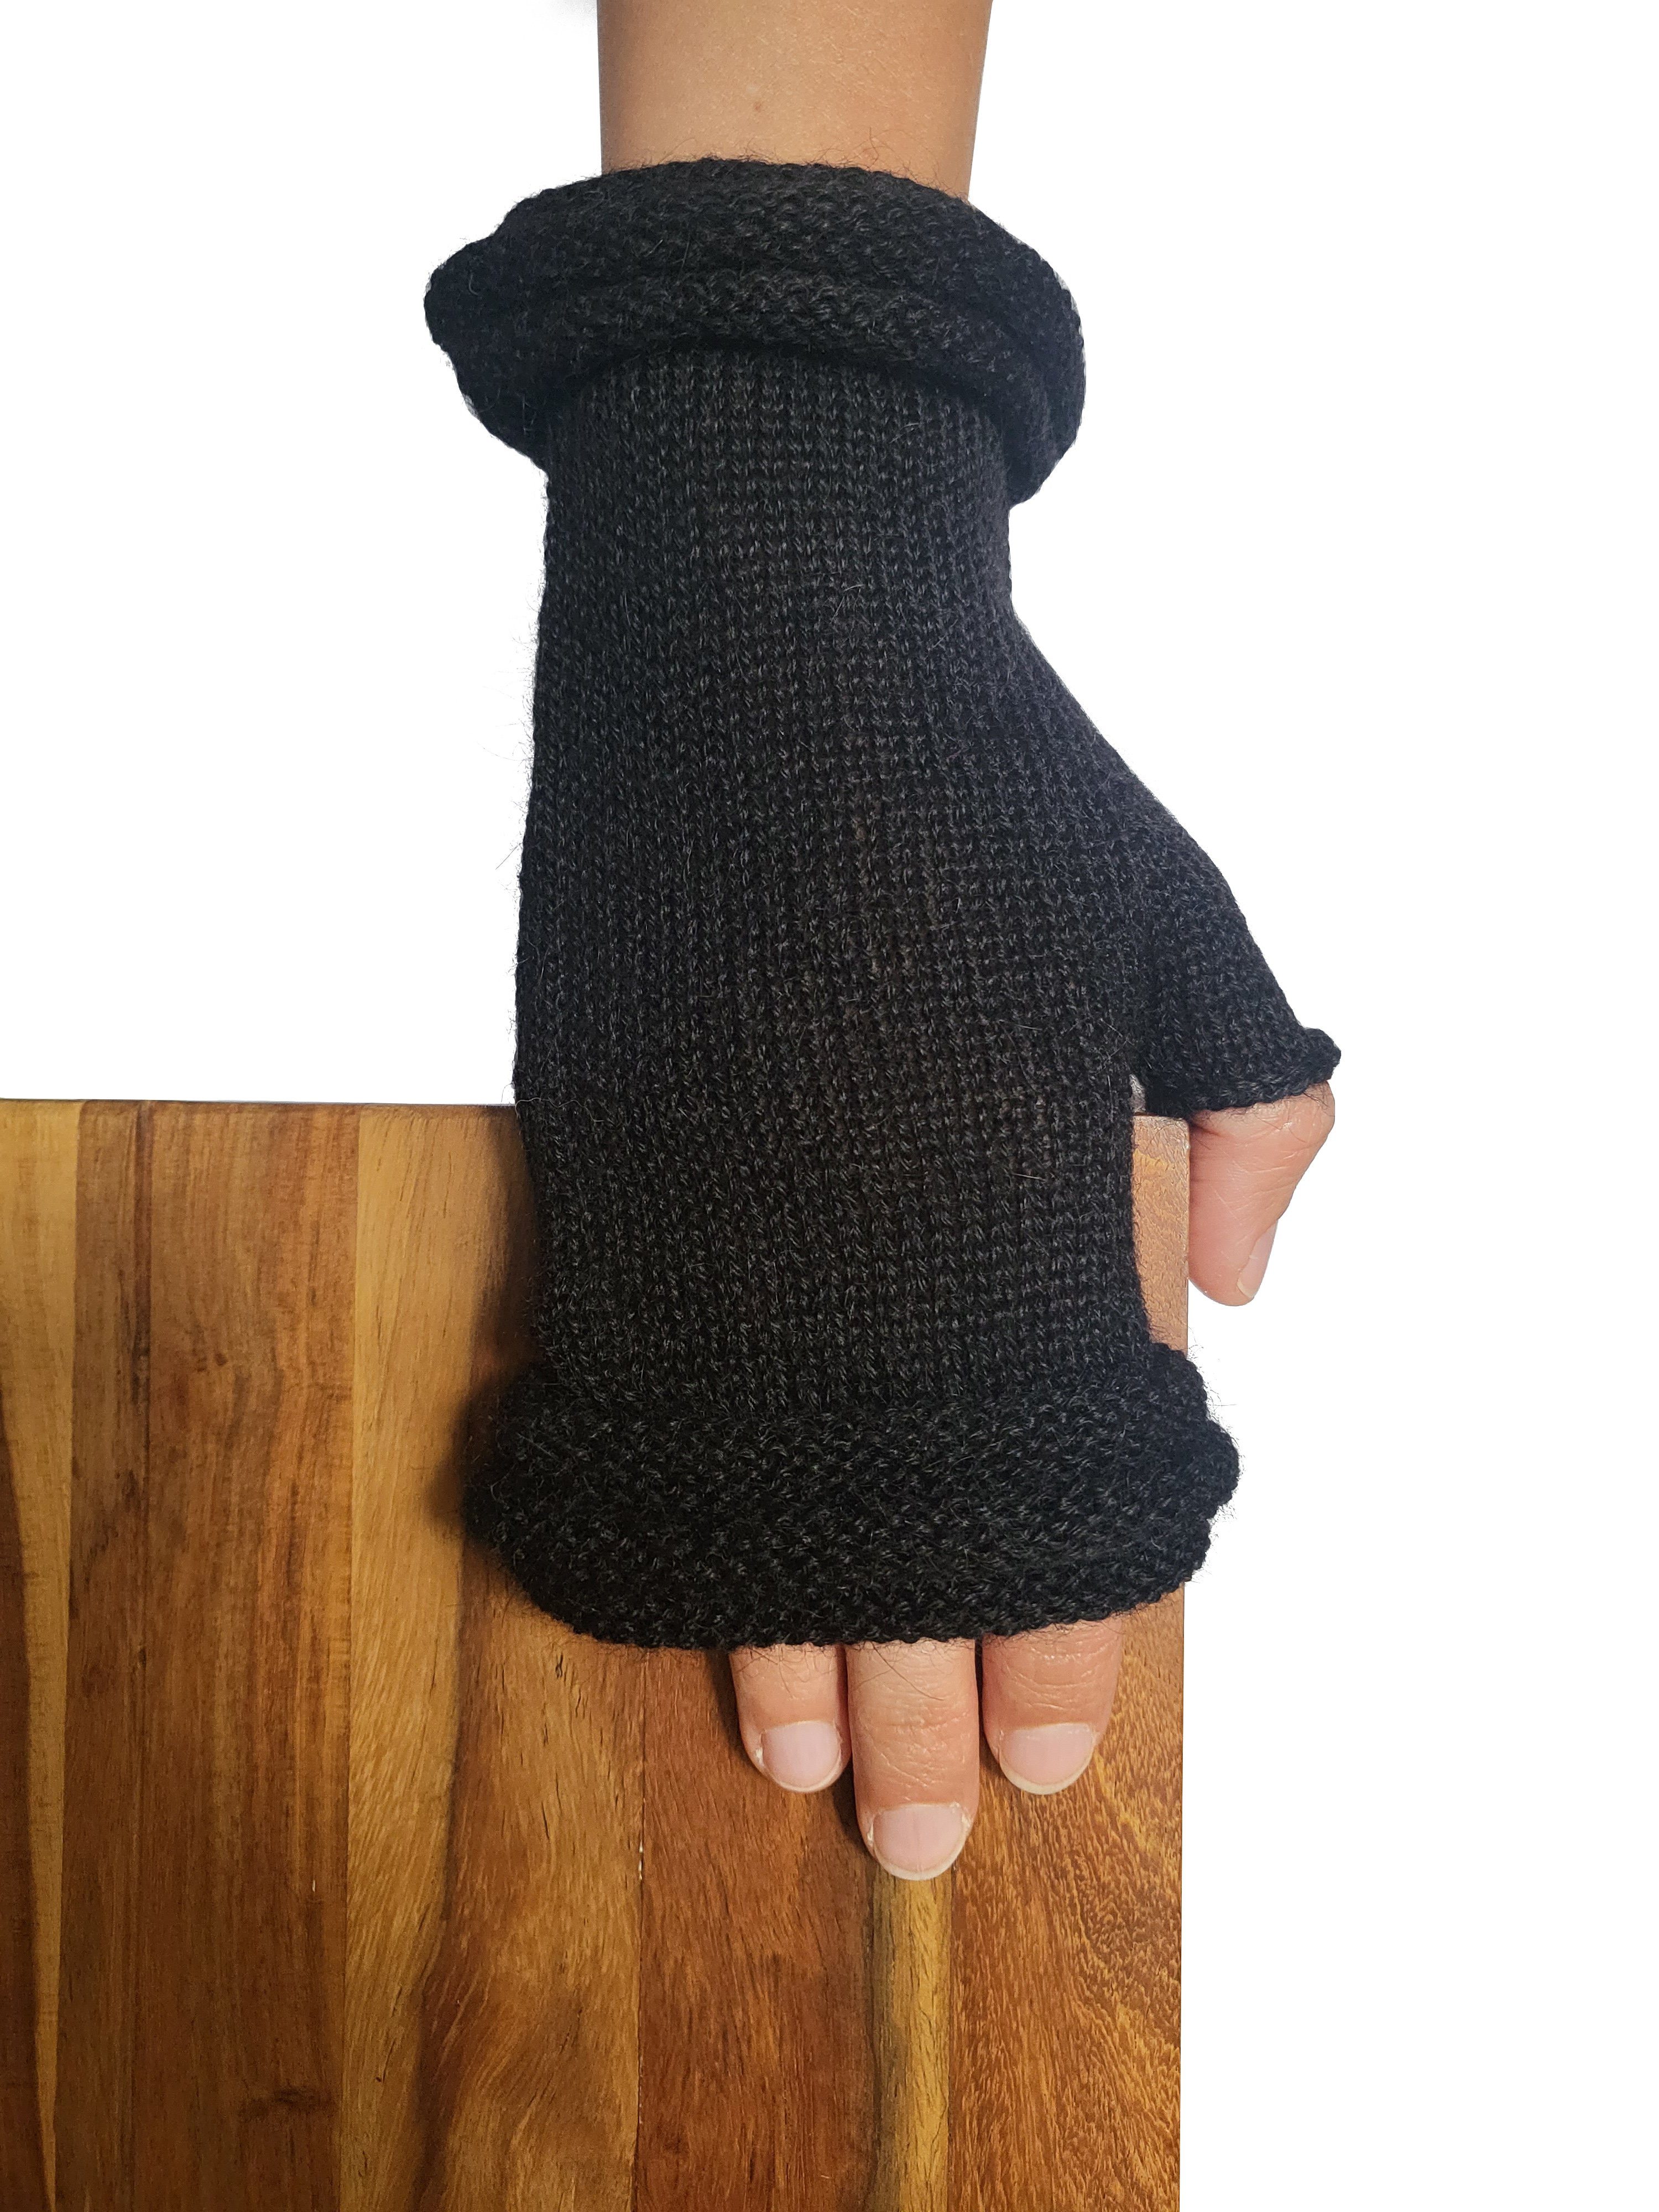 Posh Gear Fäustlinge Alpaka Handschuhe Storiguanti Damen Herren aus 100% Alpakawolle schwarz